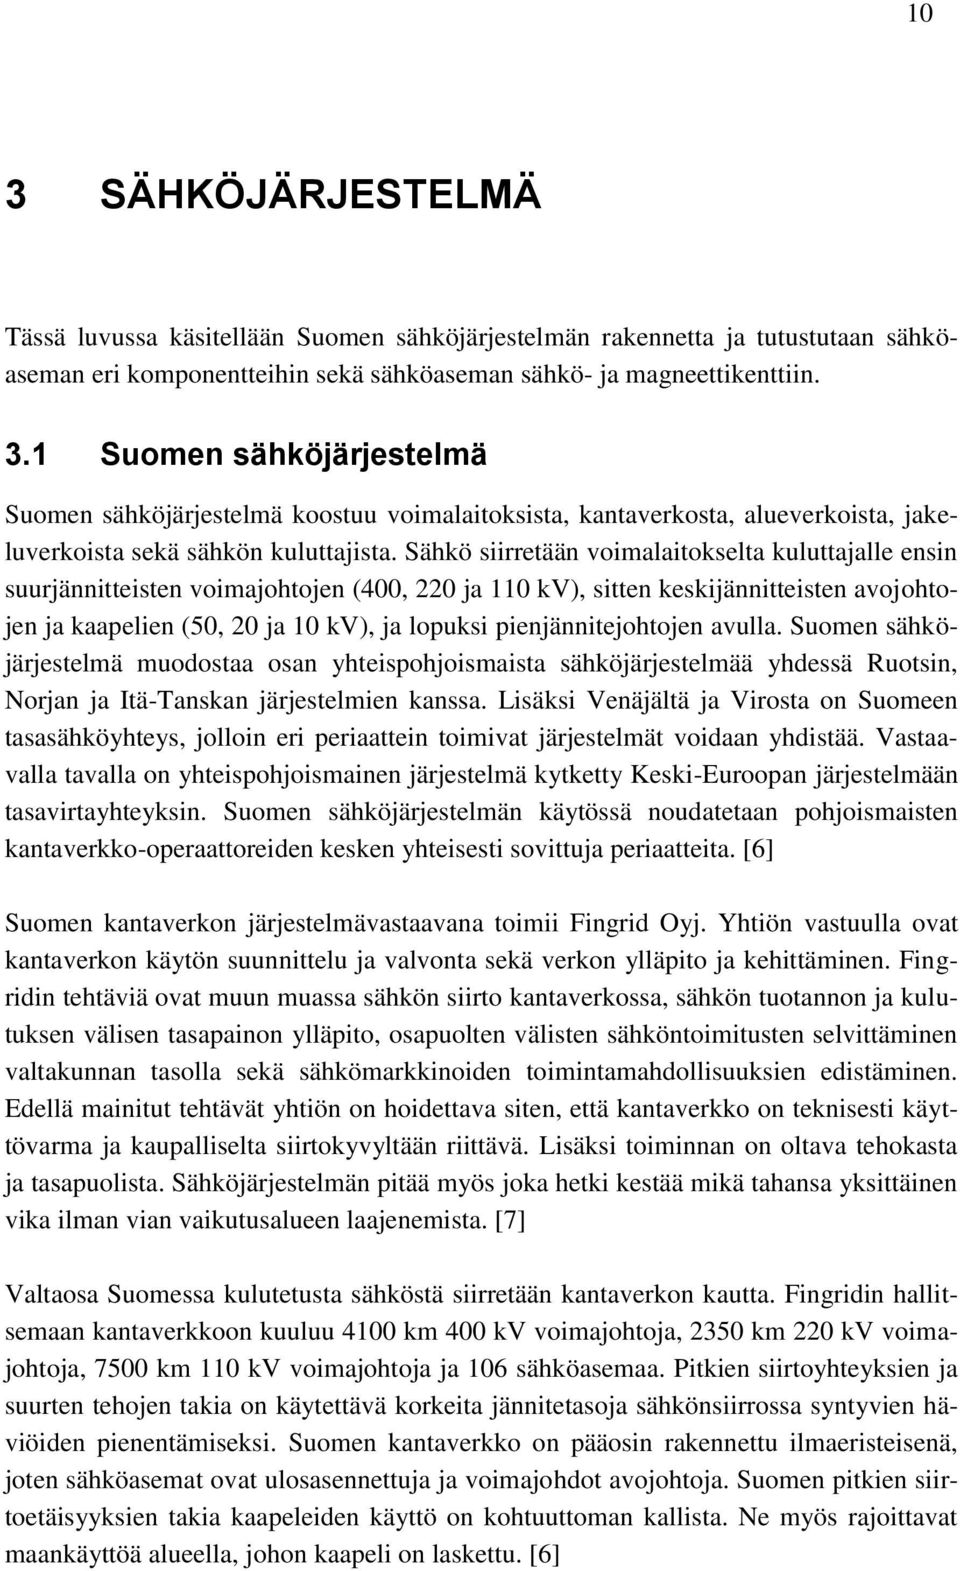 pienjännitejohtojen avulla. Suomen sähköjärjestelmä muodostaa osan yhteispohjoismaista sähköjärjestelmää yhdessä Ruotsin, Norjan ja Itä-Tanskan järjestelmien kanssa.